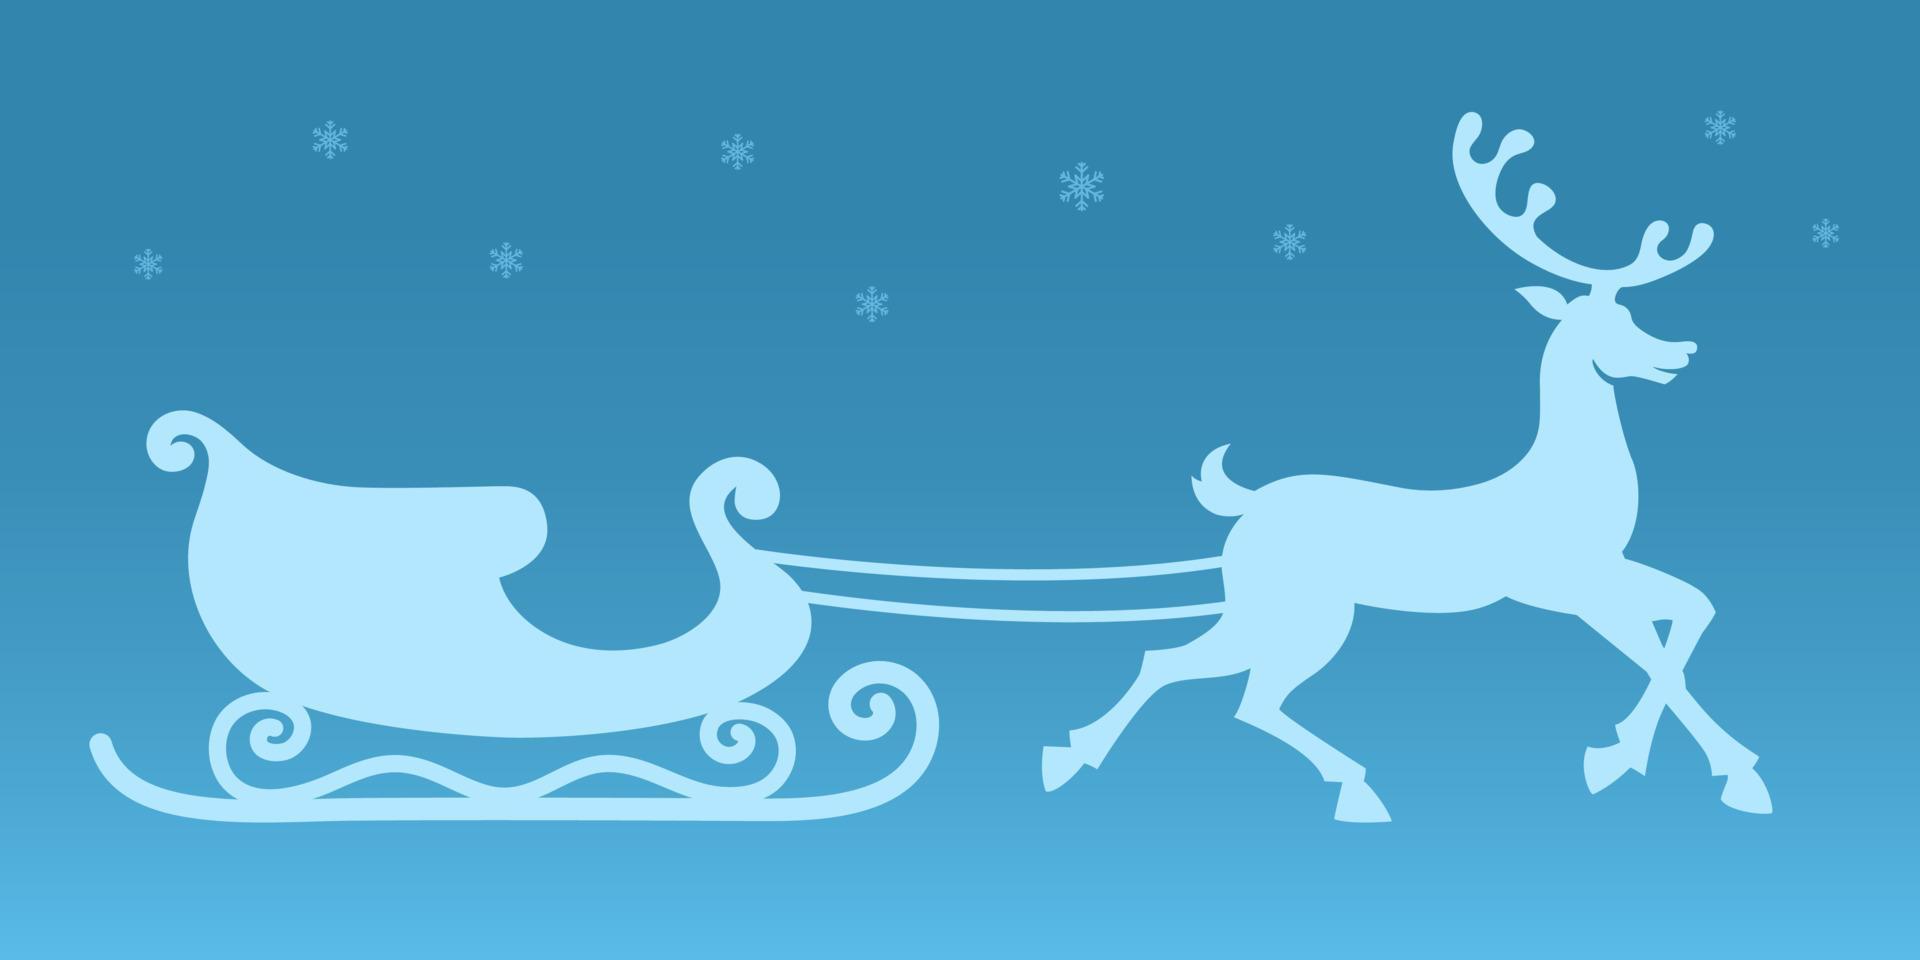 släde och ren. vektor silhuett. jul klistermärke. santa claus släde och utnyttjas löpning ren. blå bakgrund med snöflingor. jul illustration för dekorationer